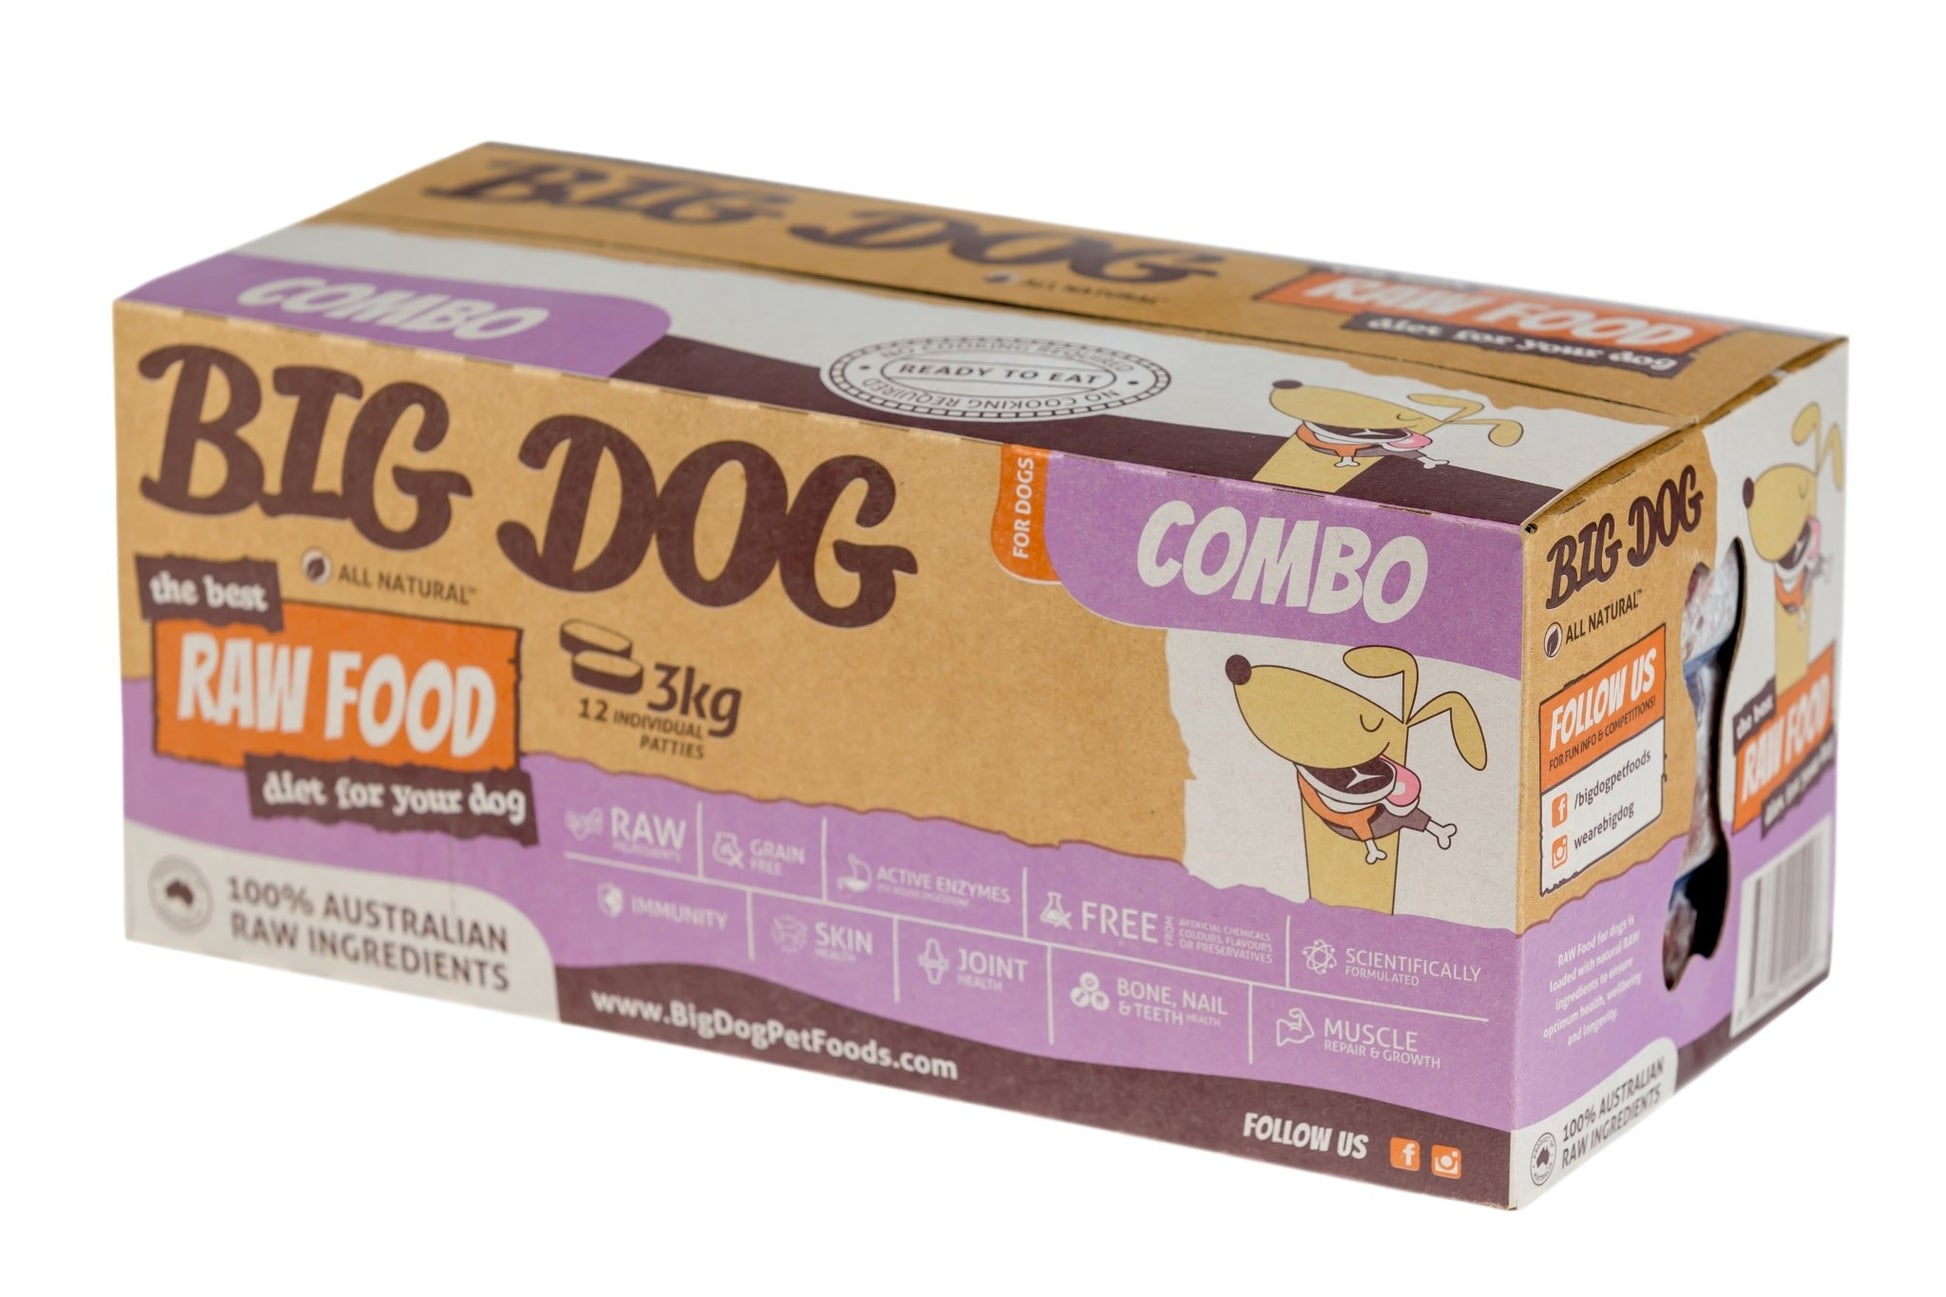 Barf Big Dog 3kg Combo - Woonona Petfood & Produce